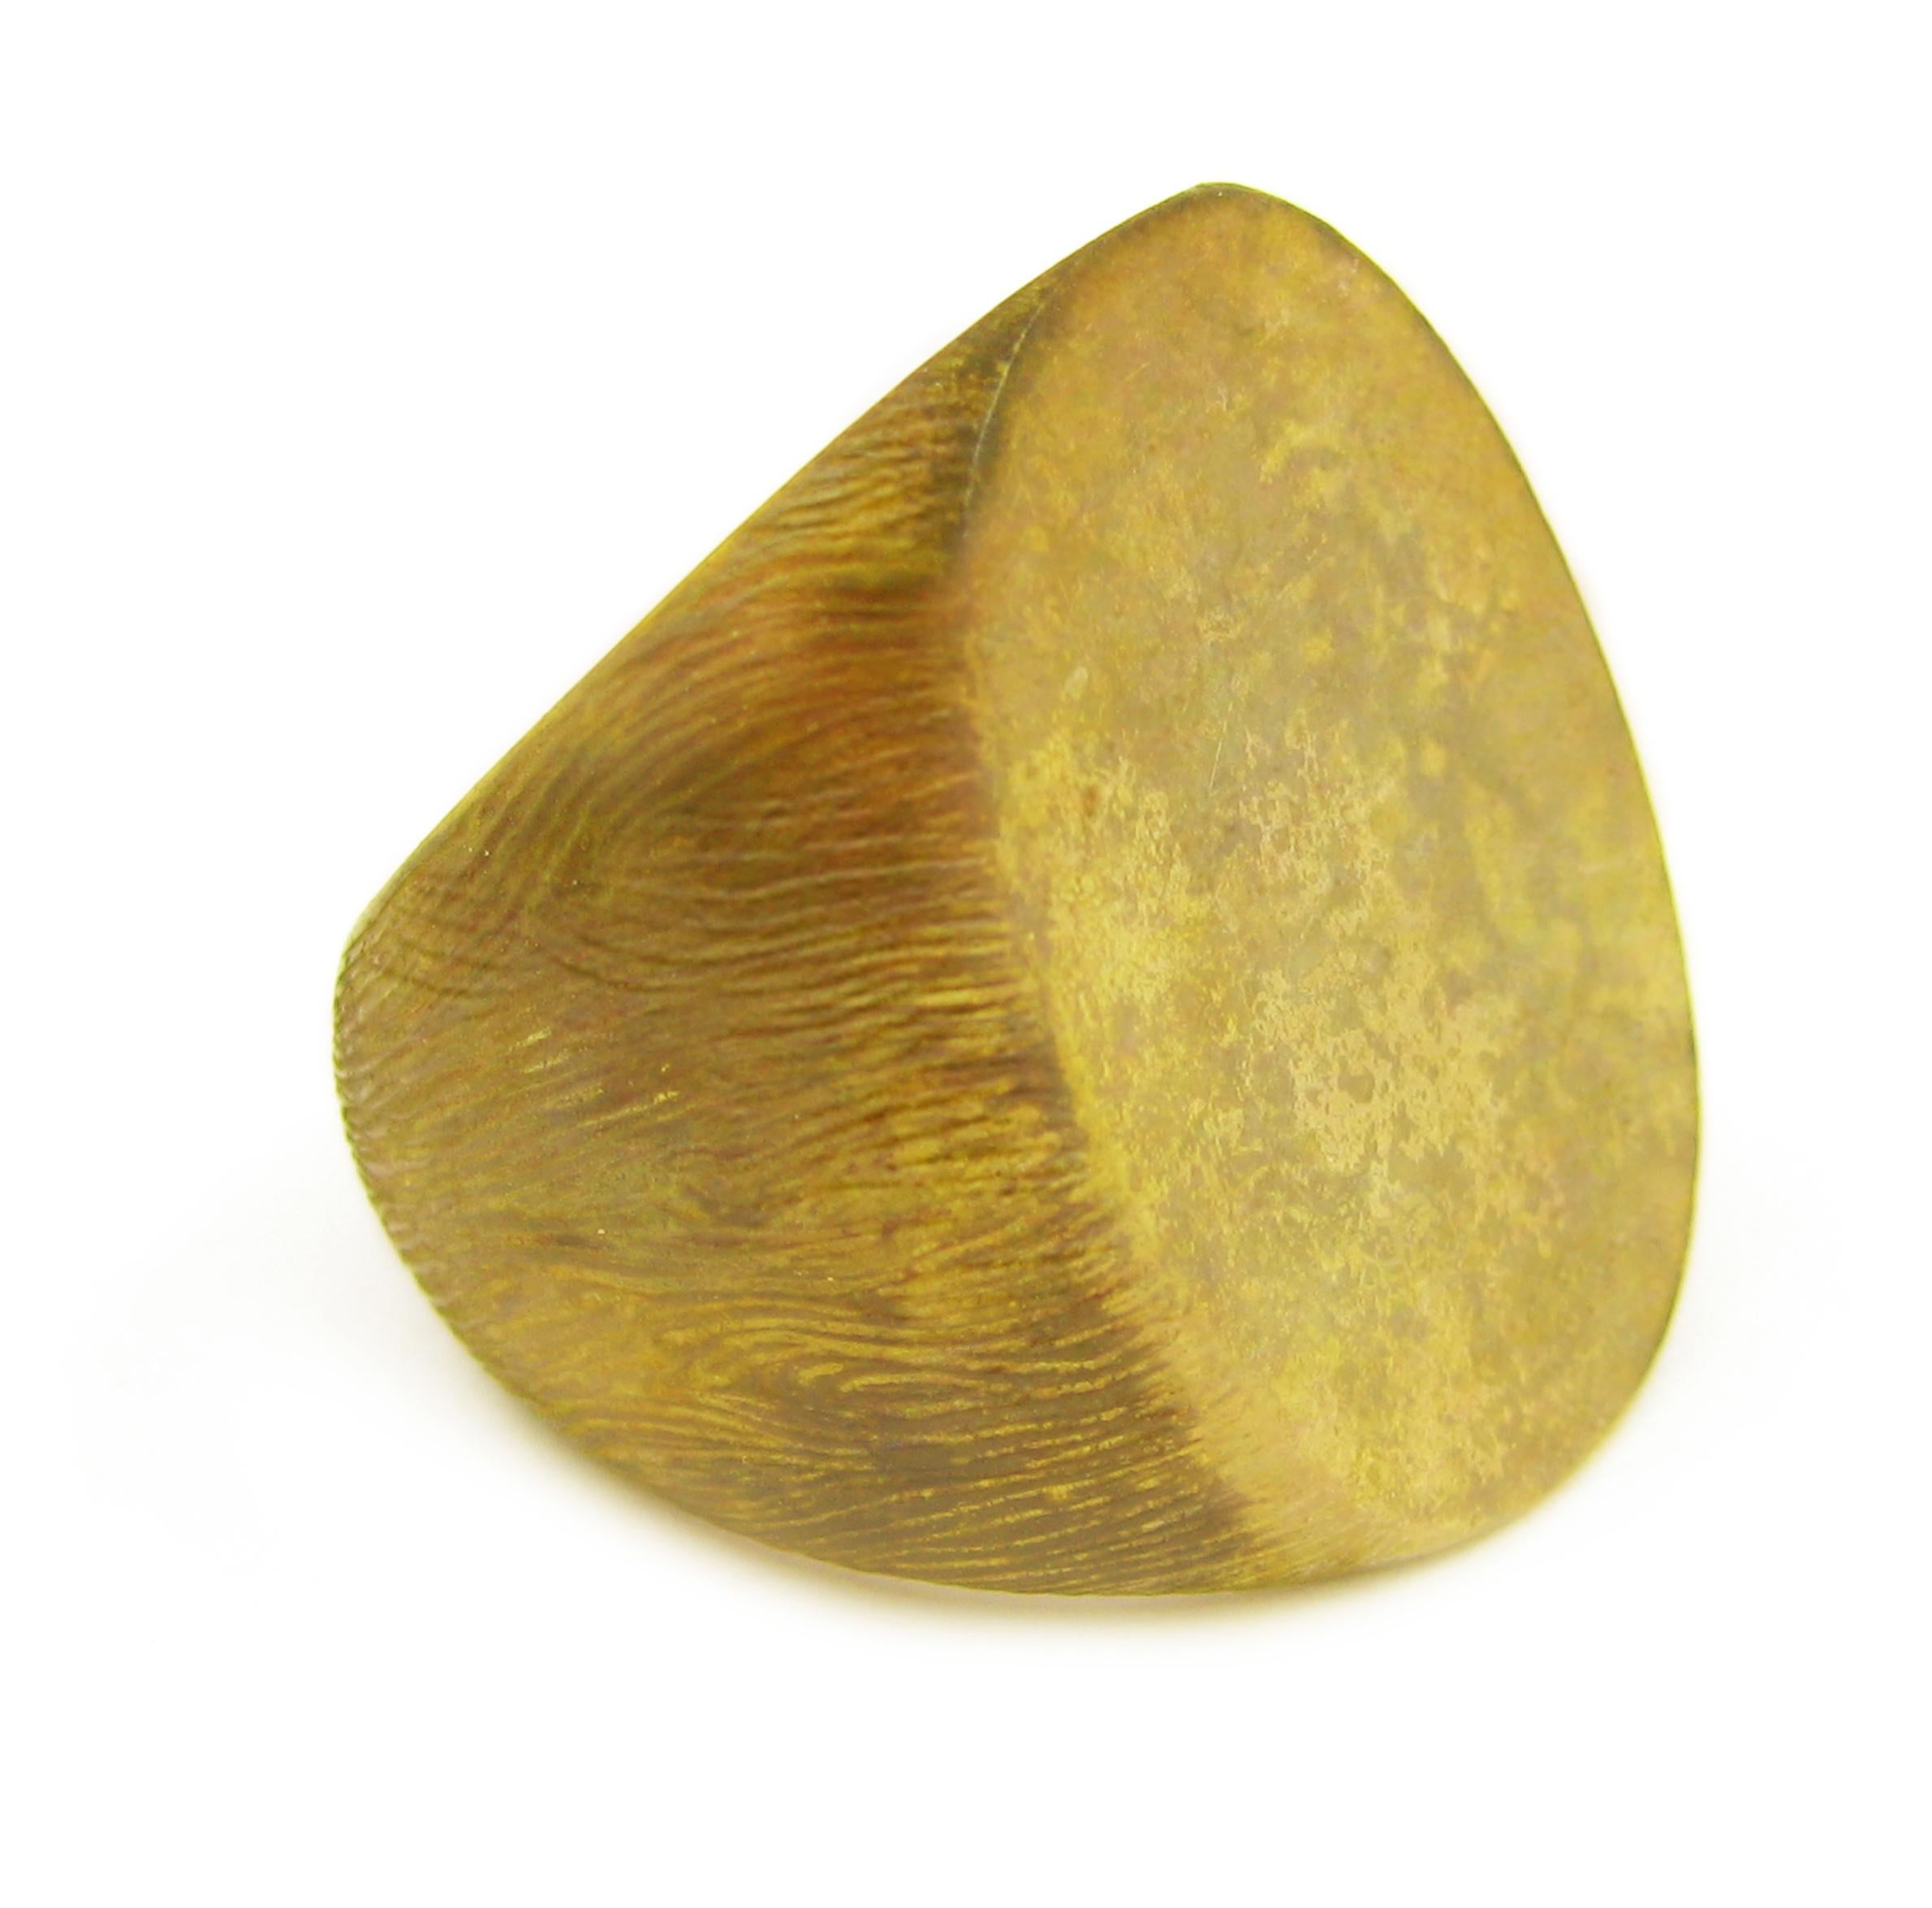 Inspiré de l'éternel arbre de vie, l'esprit organique de K.K. Brunini s'exprime dans cette bague à écusson en forme de brindille, texturée à la main, en or jaune 18 carats avec finition polie. 

Dans la collection Brindille, la nature côtoie